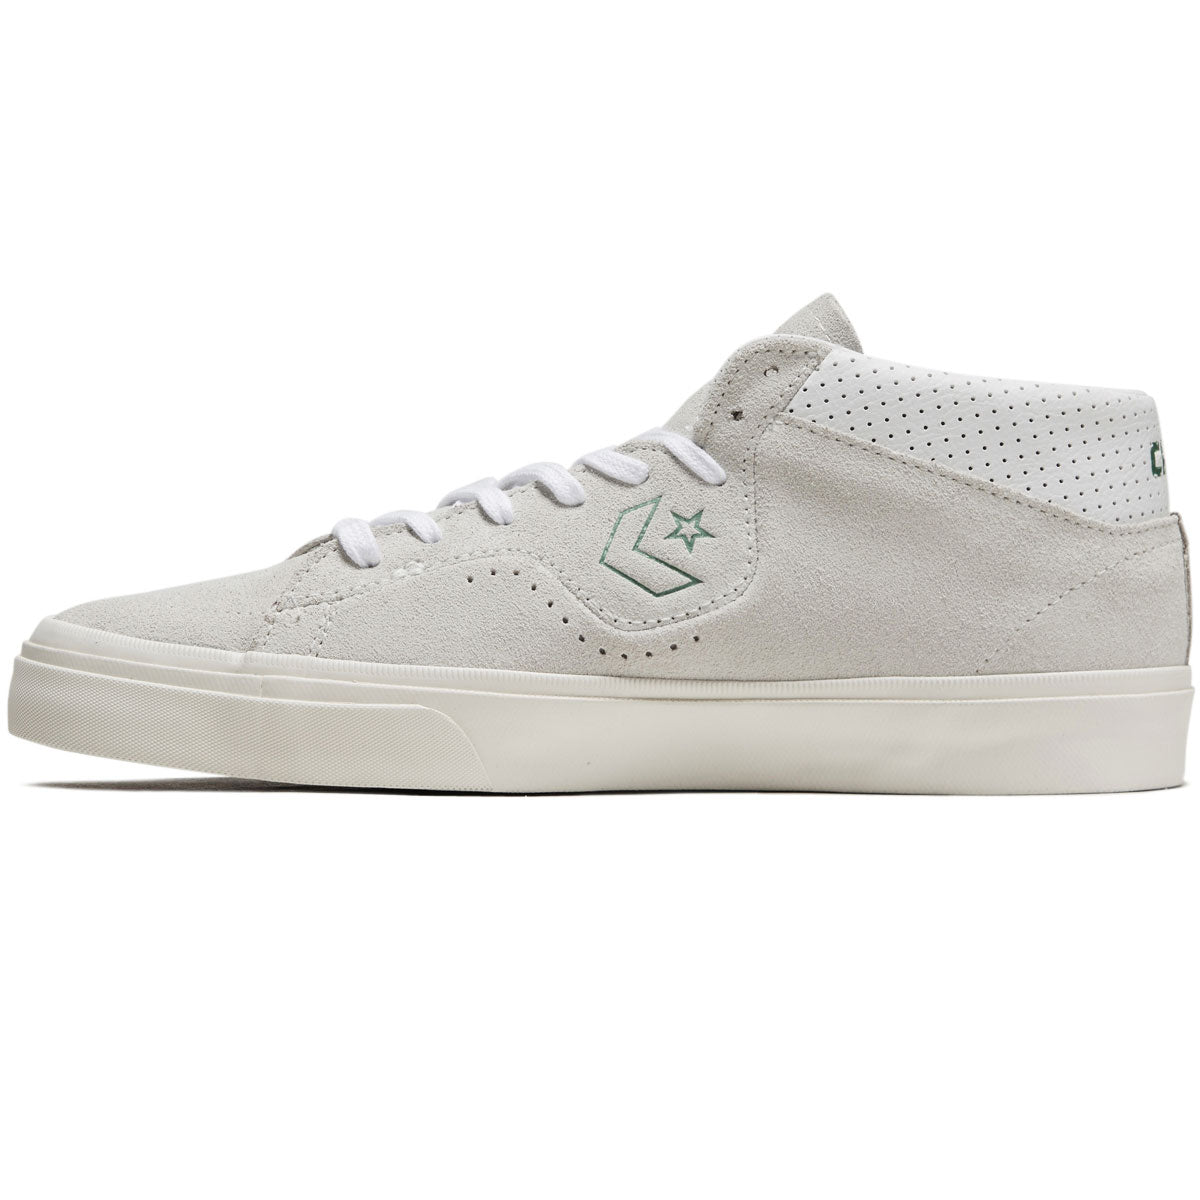 Converse Louie Lopez Pro Mid Shoes - Vaporous Gray/White/Egret image 2